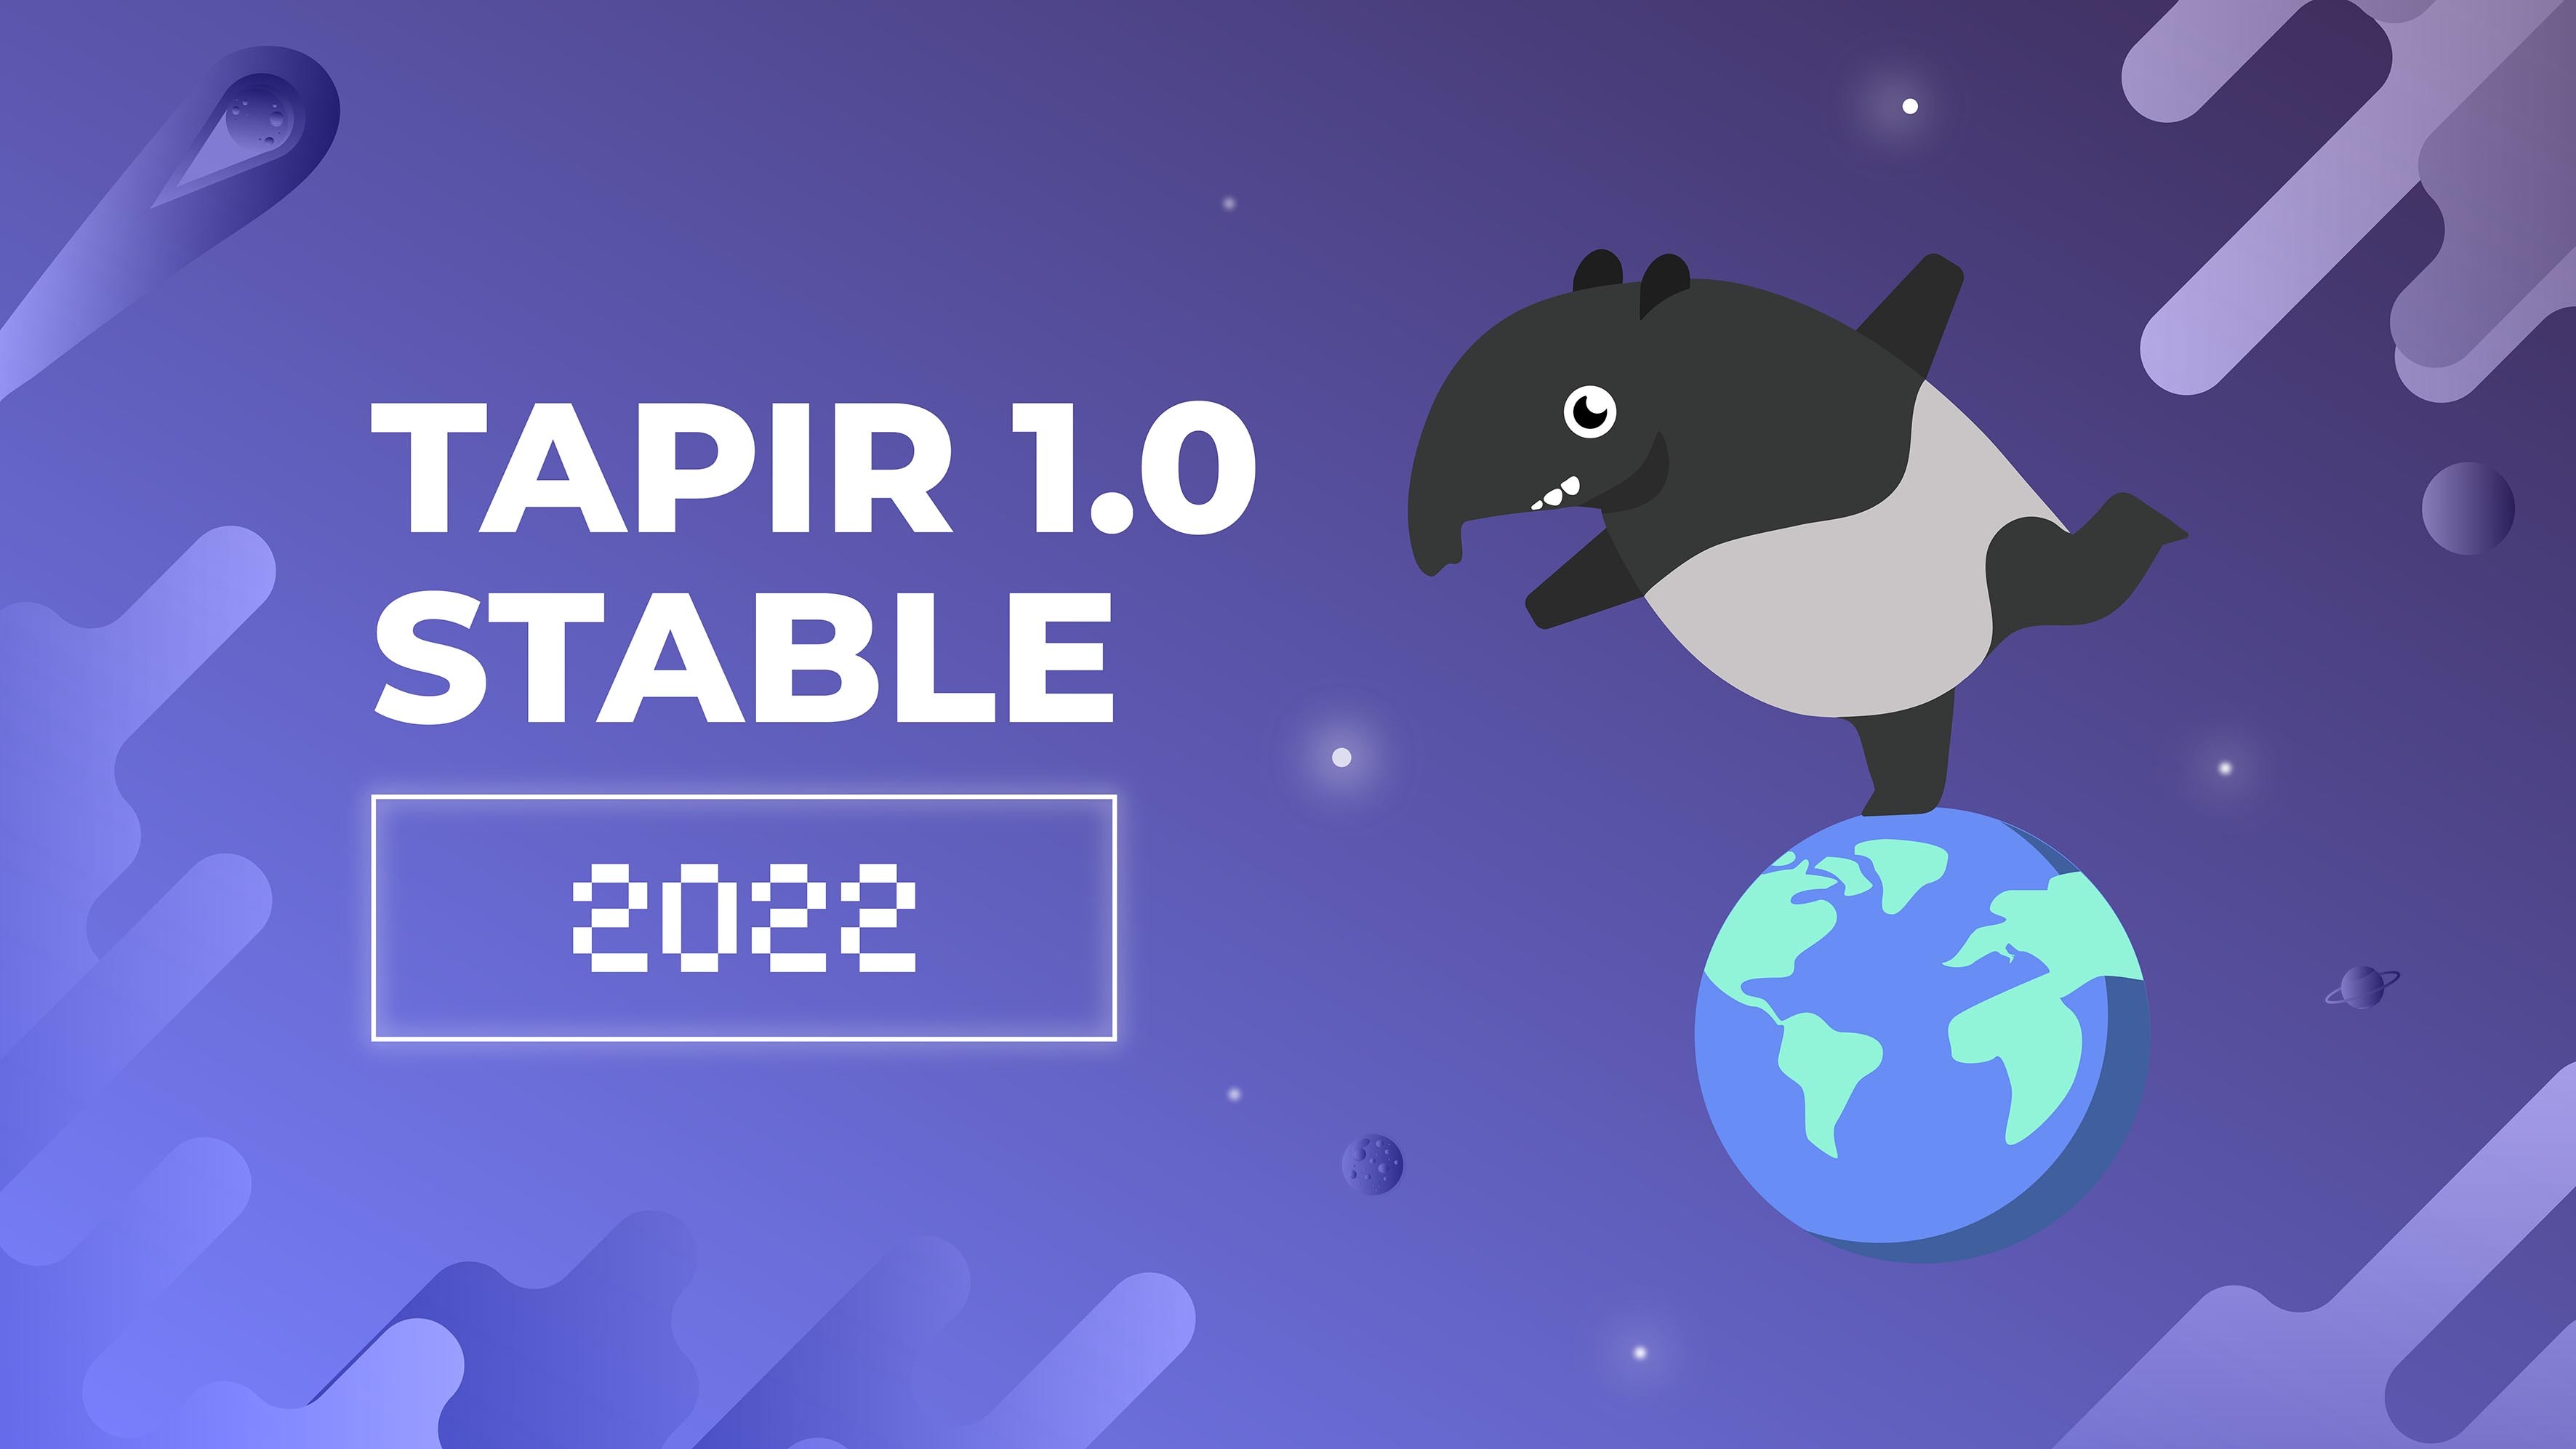 Tapir 1.0 released webp image